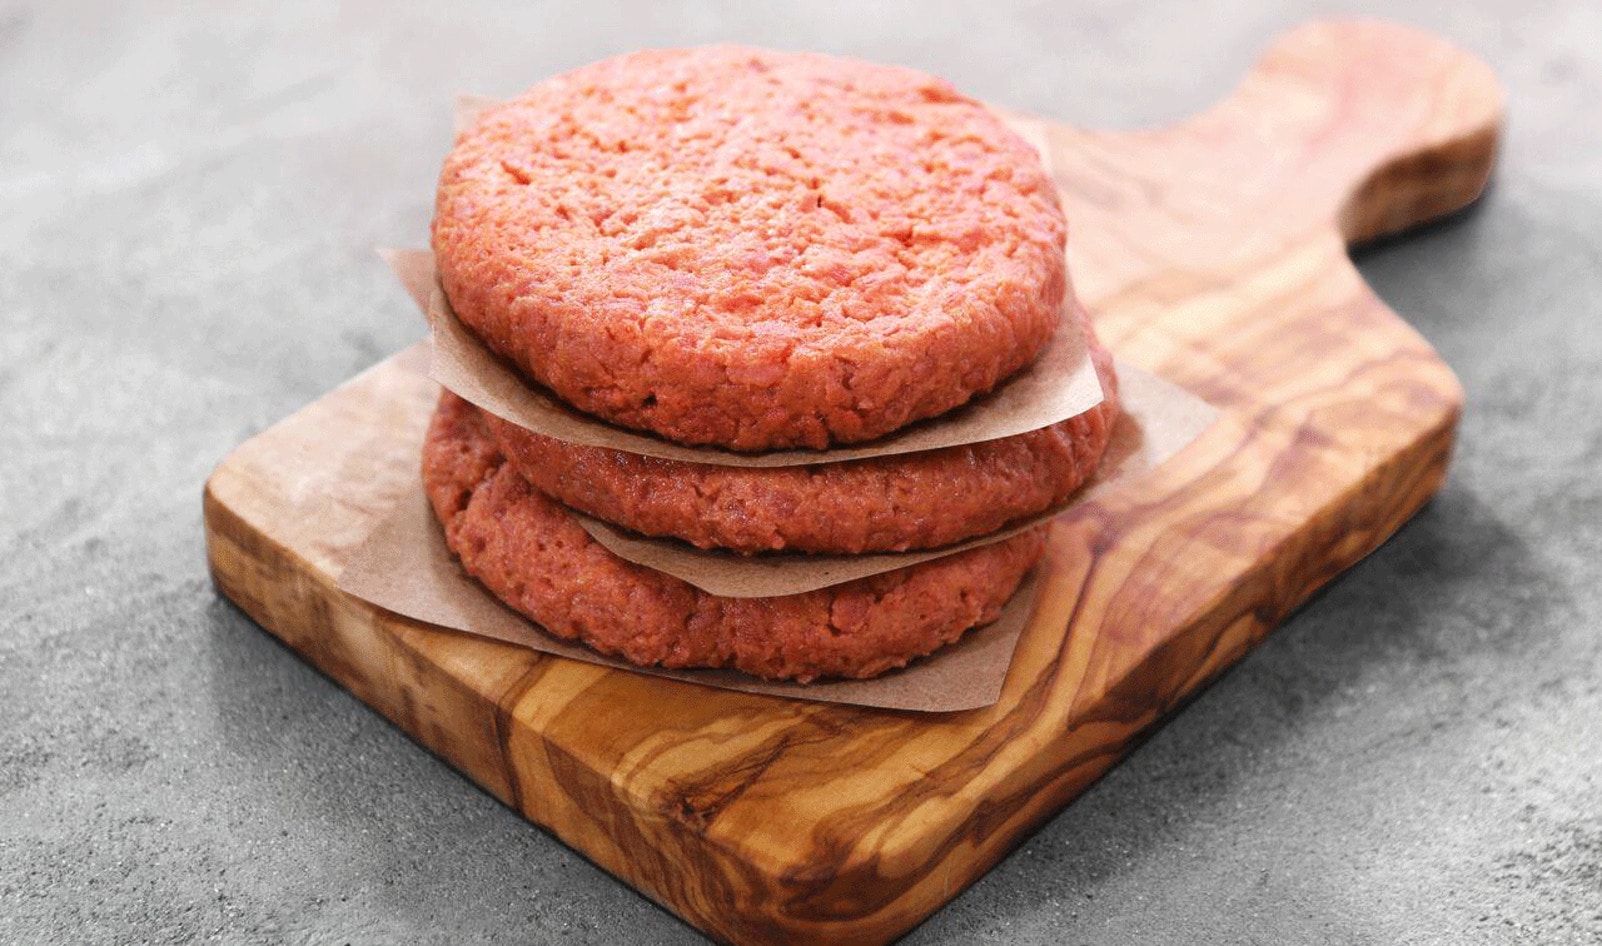 New Vegan Burger Brand Uncut Debuts at 192 Ralphs Stores in California